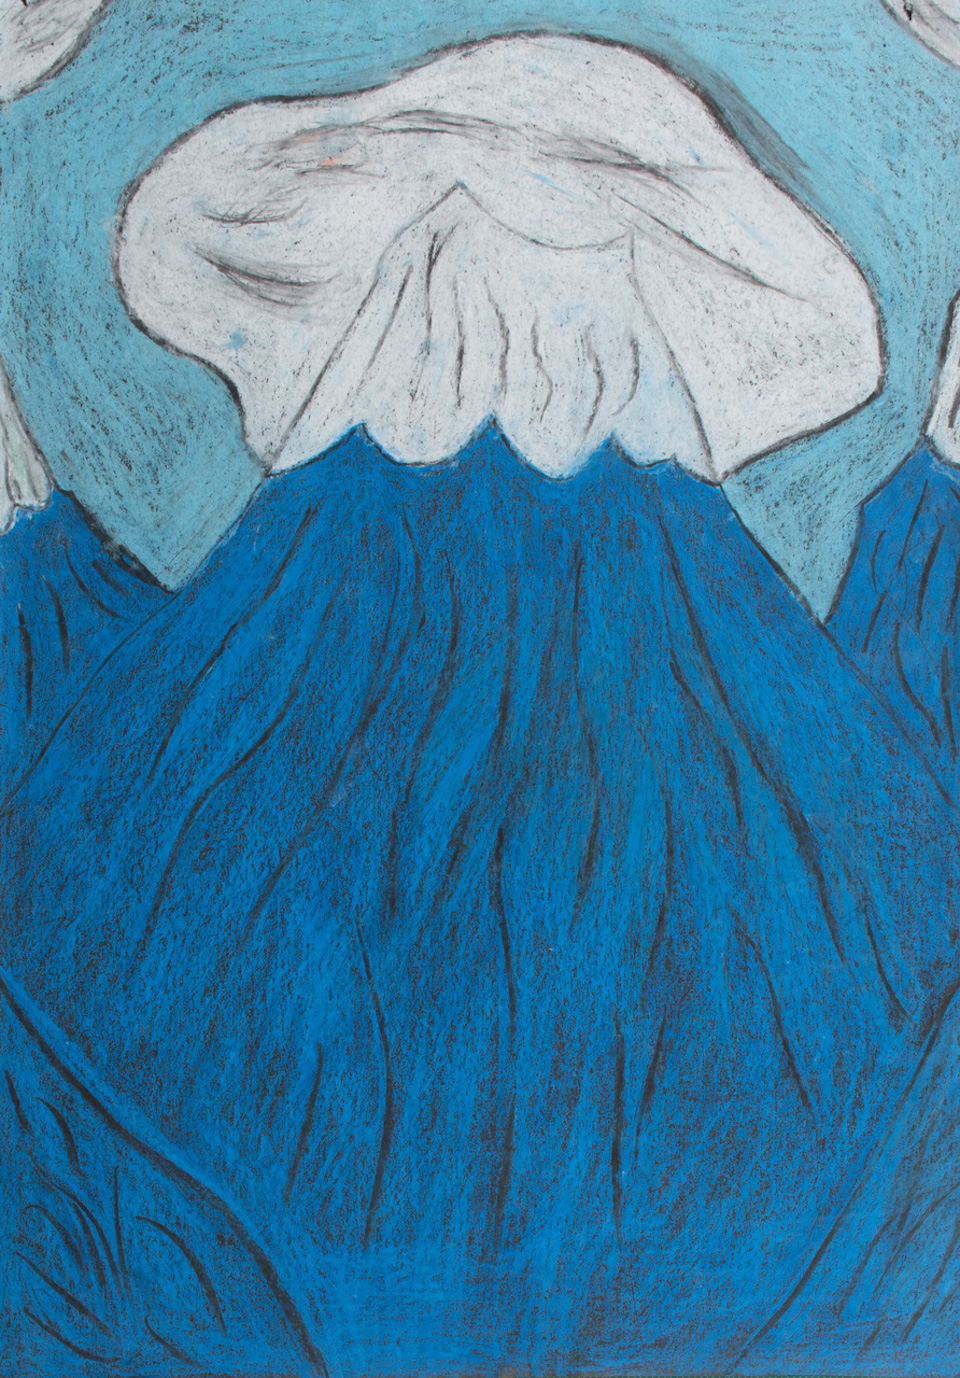 青木 尊さんの作品画像。青で描かれた山野ような突起物が画面の大半を占めており、その突起物の先端には白い雲ようなものがかかっているように見える。